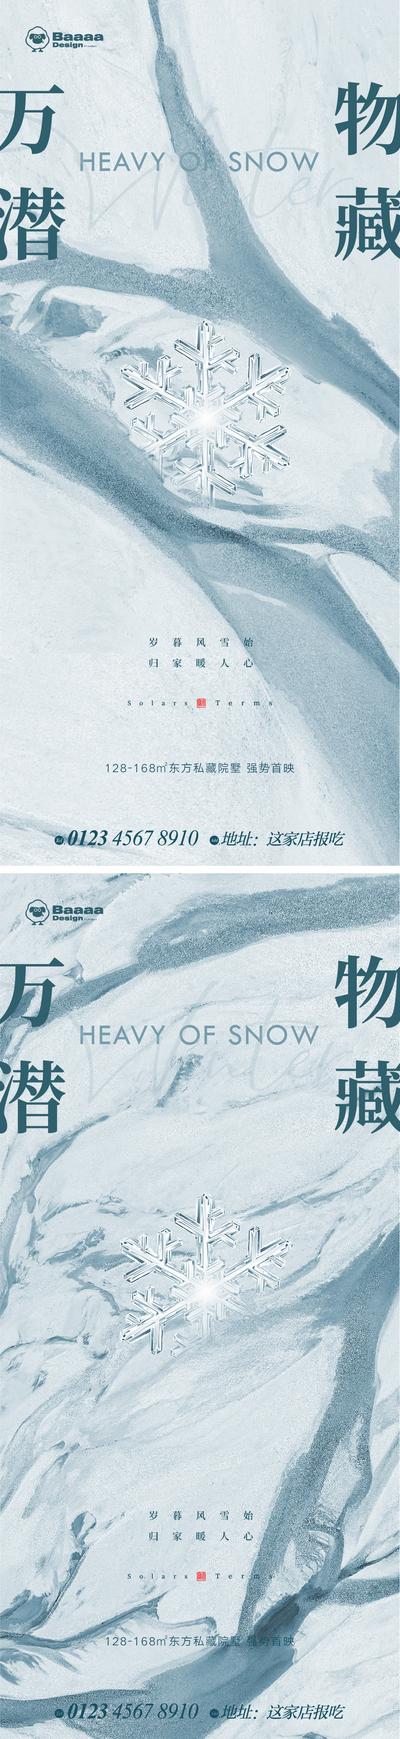 【南门网】广告 海报 系列 大雪 小寒 大寒 雪花 肌理 背景 底纹 大气 抽象 纹理 悬念 精致 微信